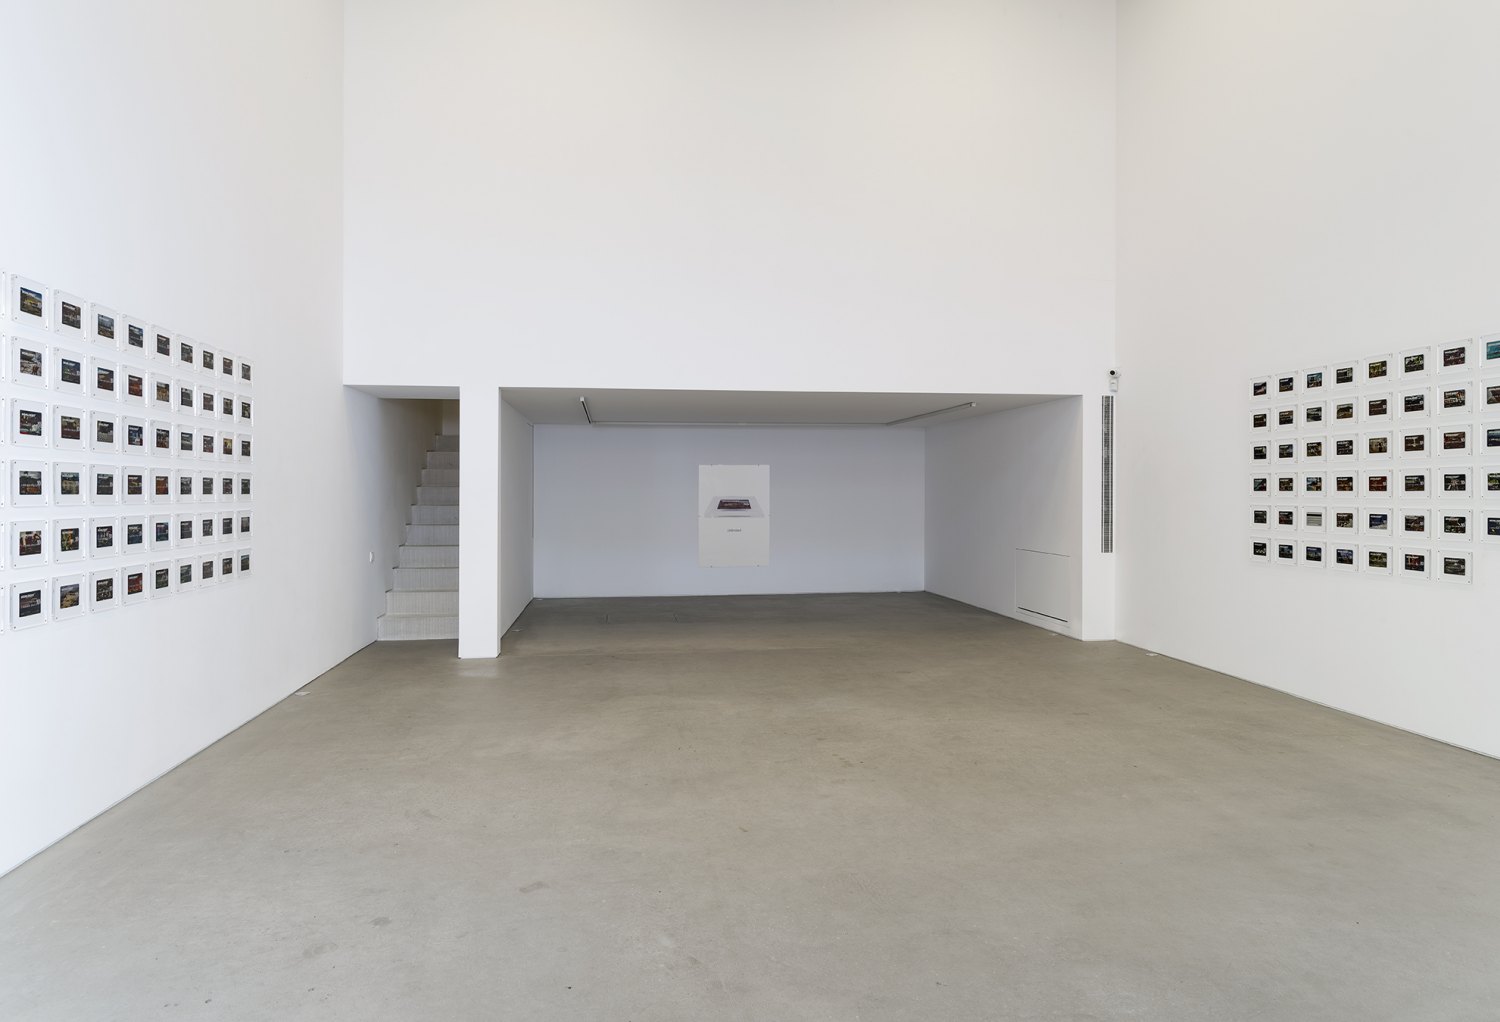 Installation view, John Knight, Worldebt, Galerie Neu at The Intermission, Piraeus, 2019